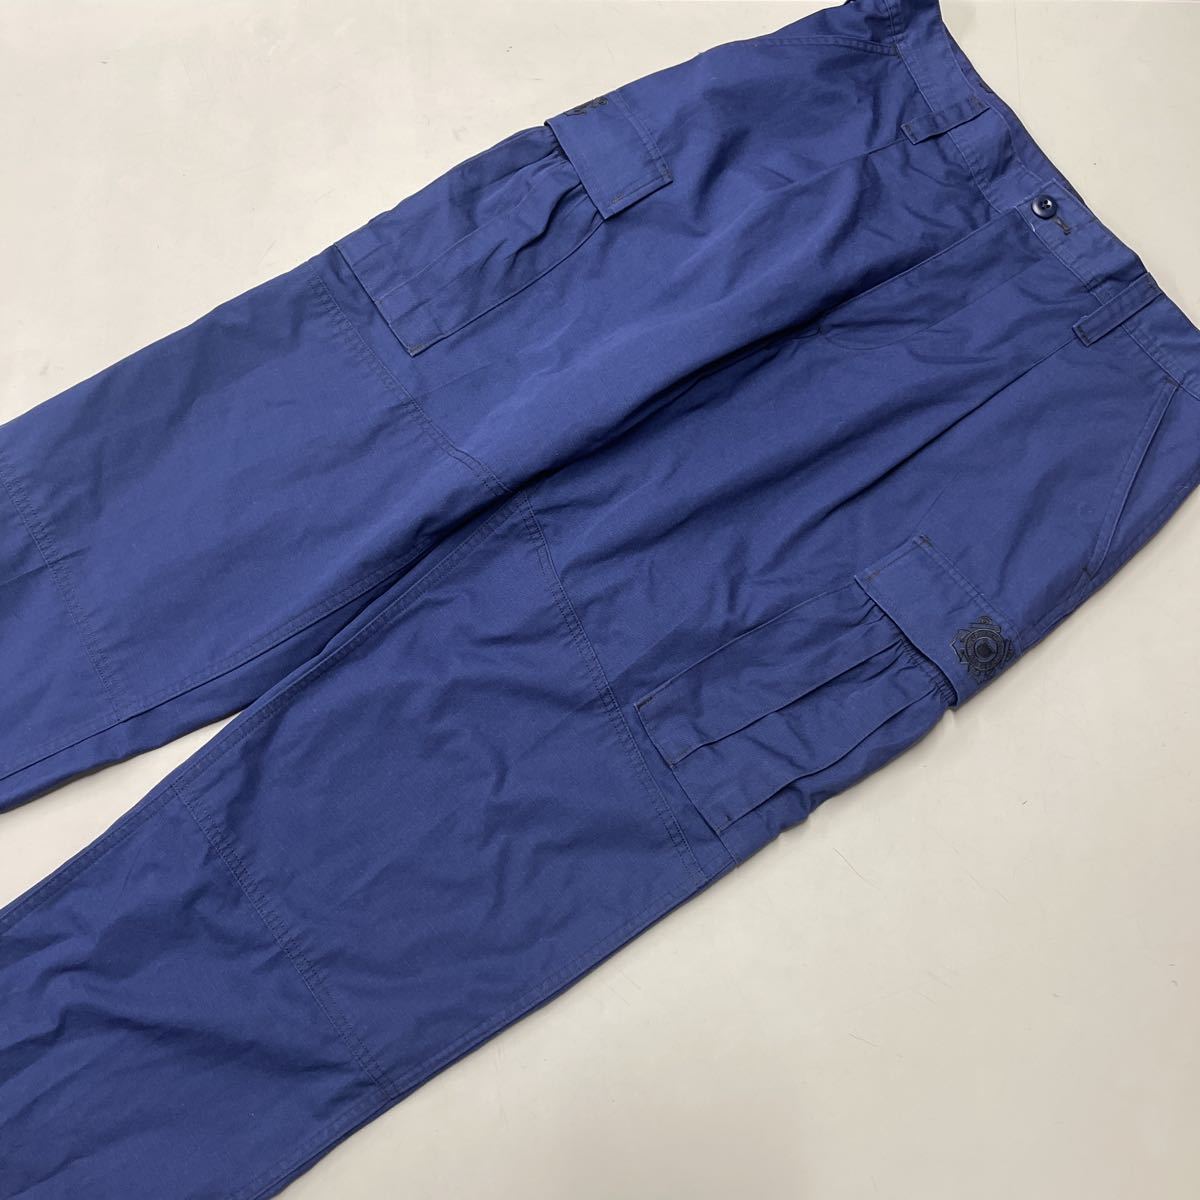 アメリカ海岸警察隊 United States Coast Guard カーゴパンツ OPERATIONAL DRESS UNIFORM pants ネイビー 美品 リップストップ メンズ w34